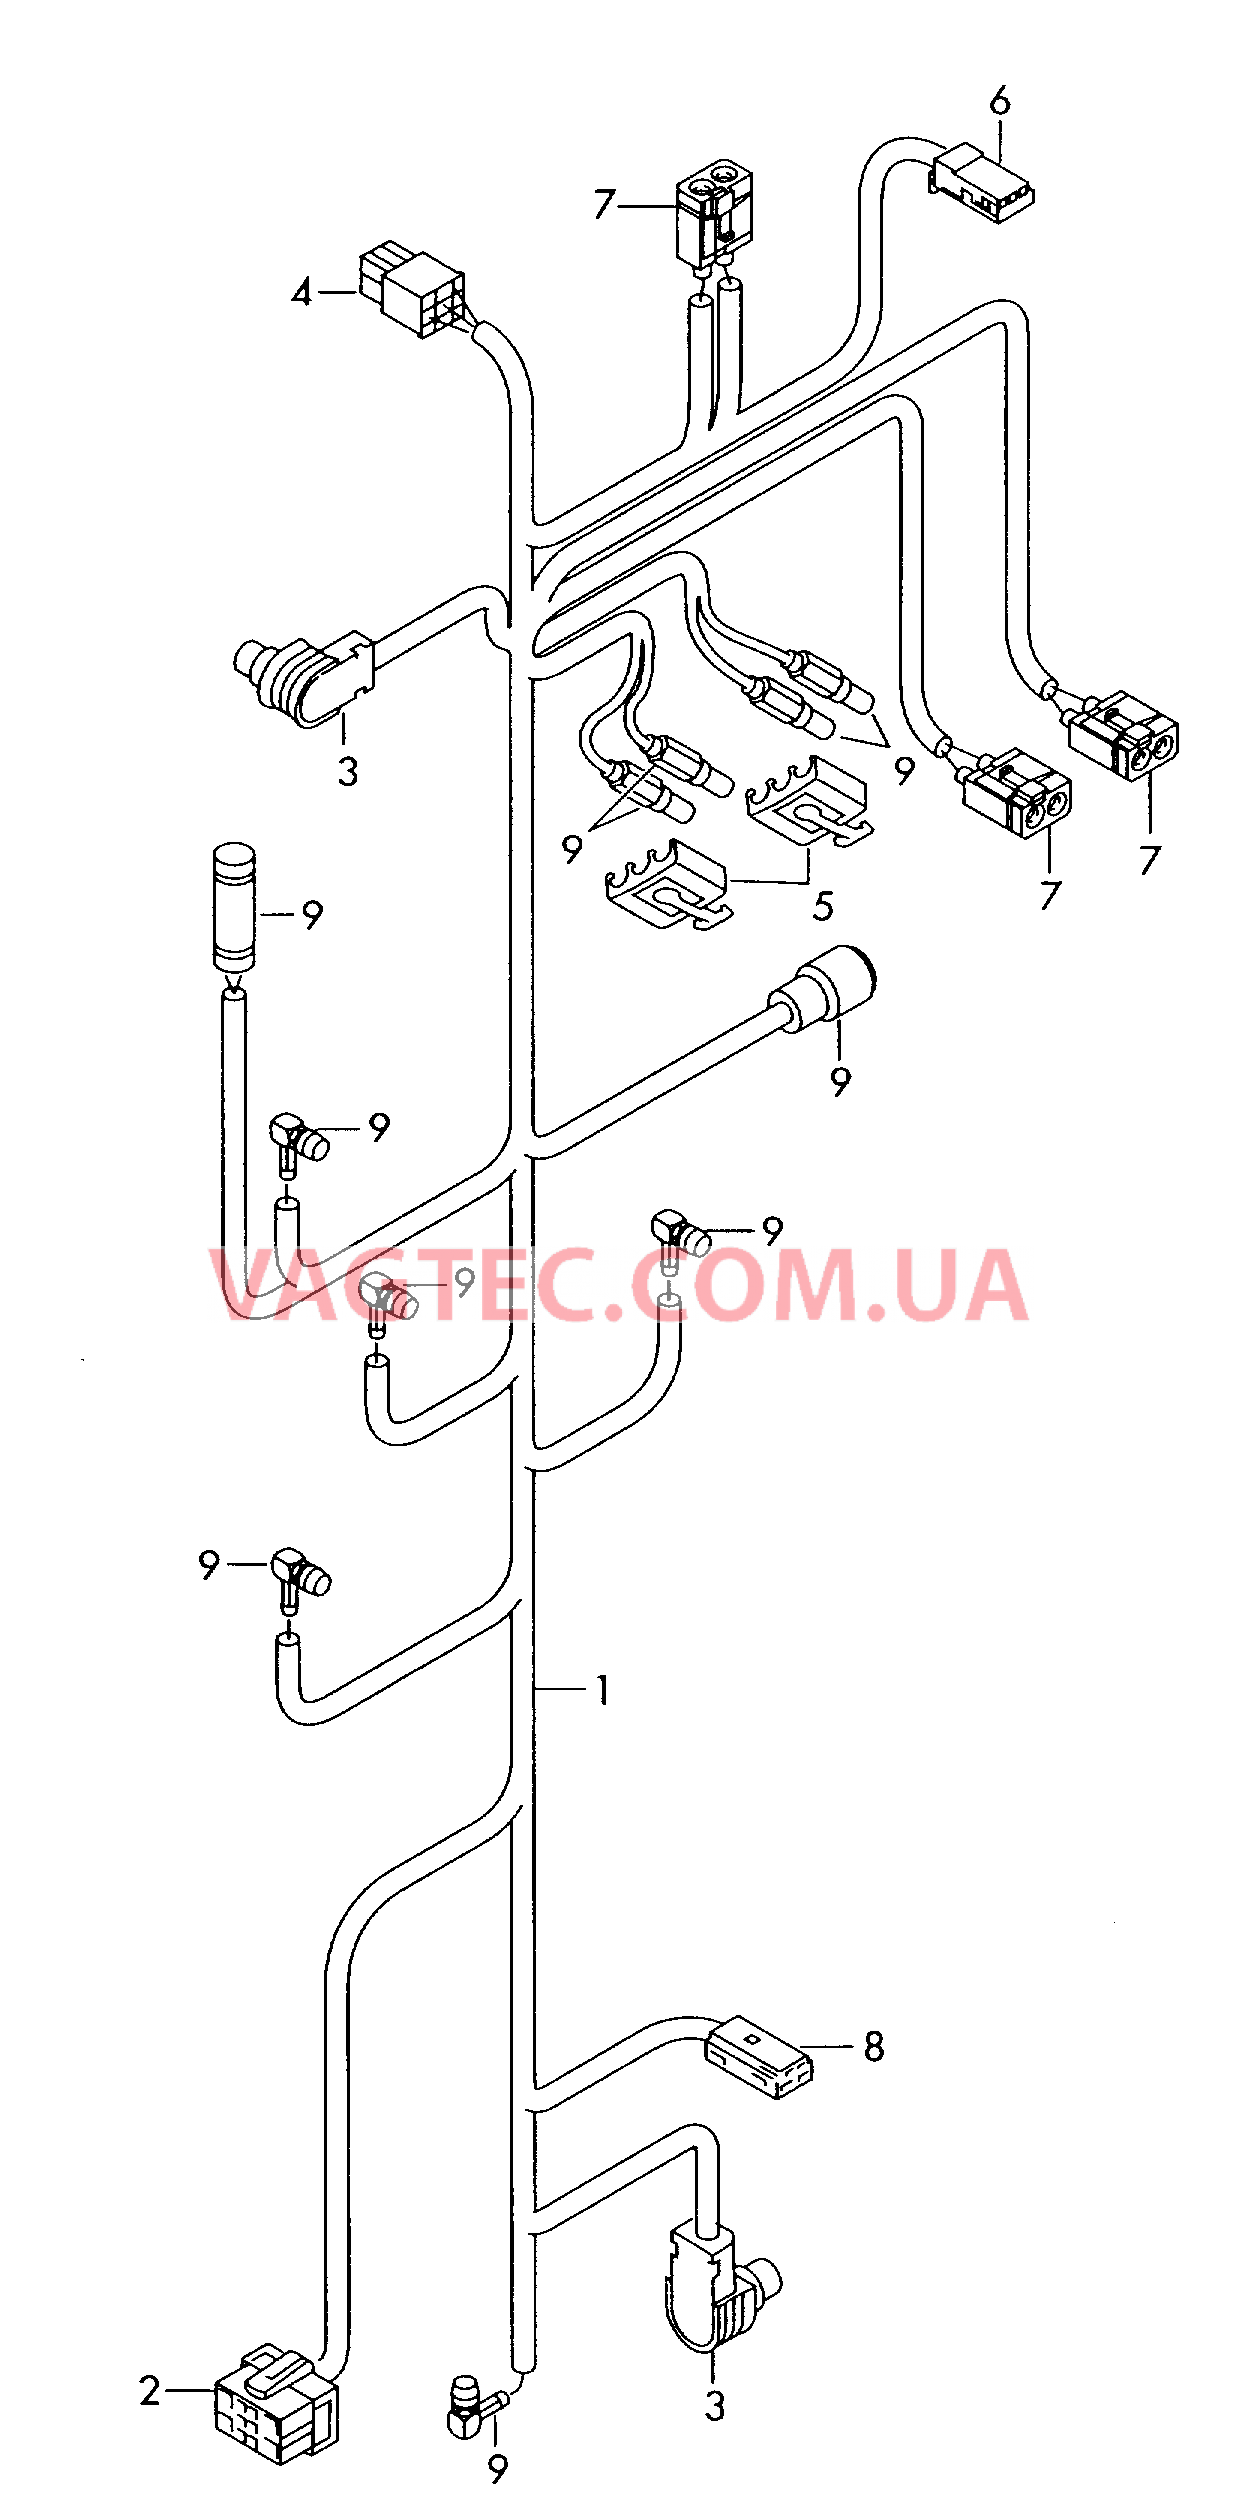 Жгут проводов для системы навигации с встроенной магнитолой  для AUDI RS4 2002